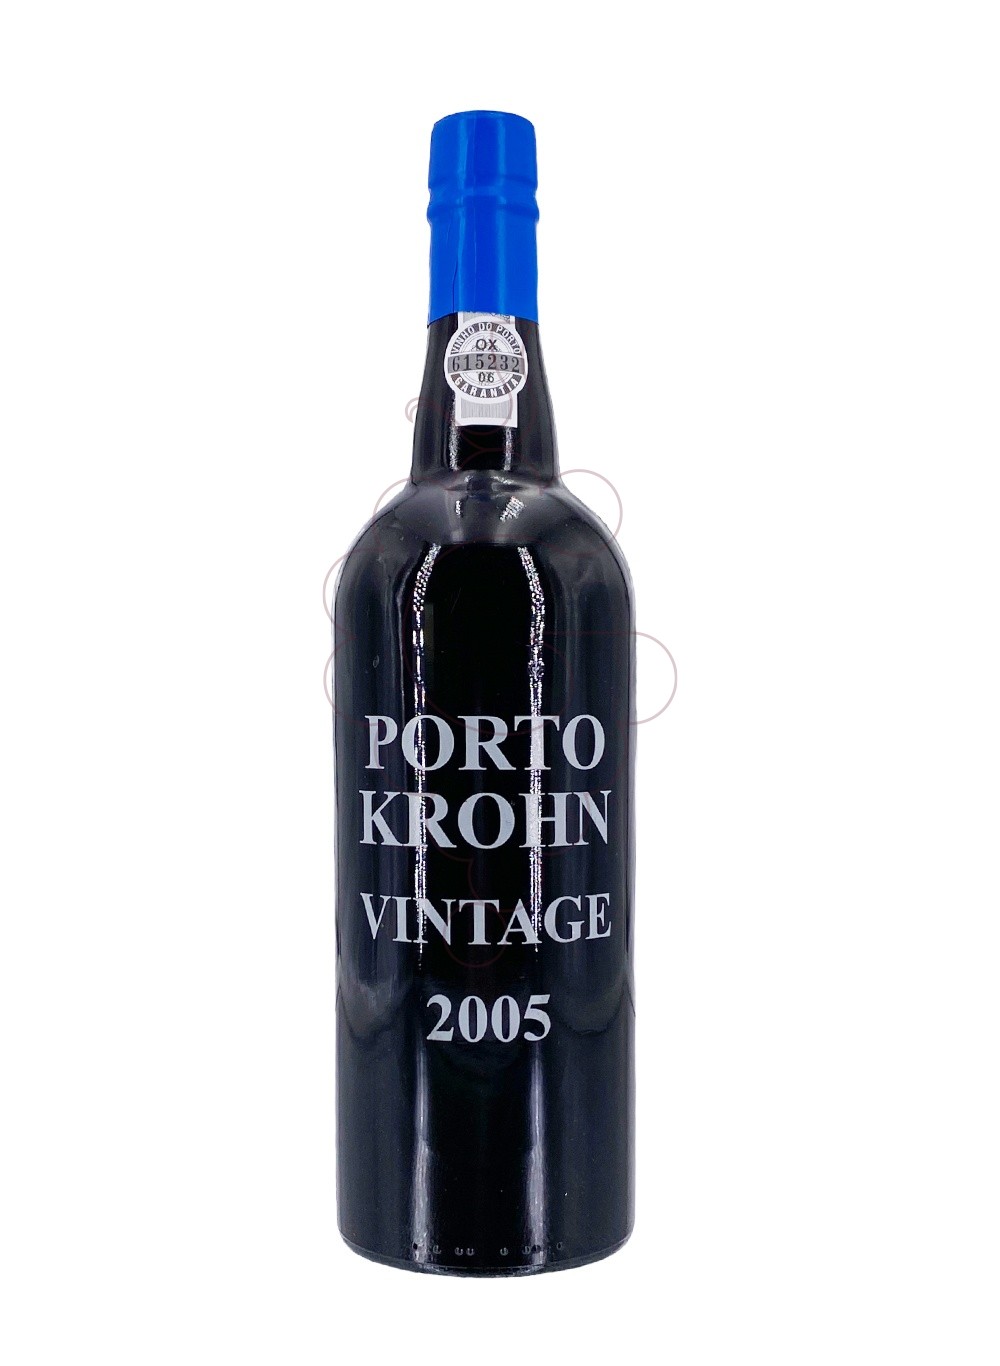 Foto Krohn vintage 2005 75 cl vino generoso